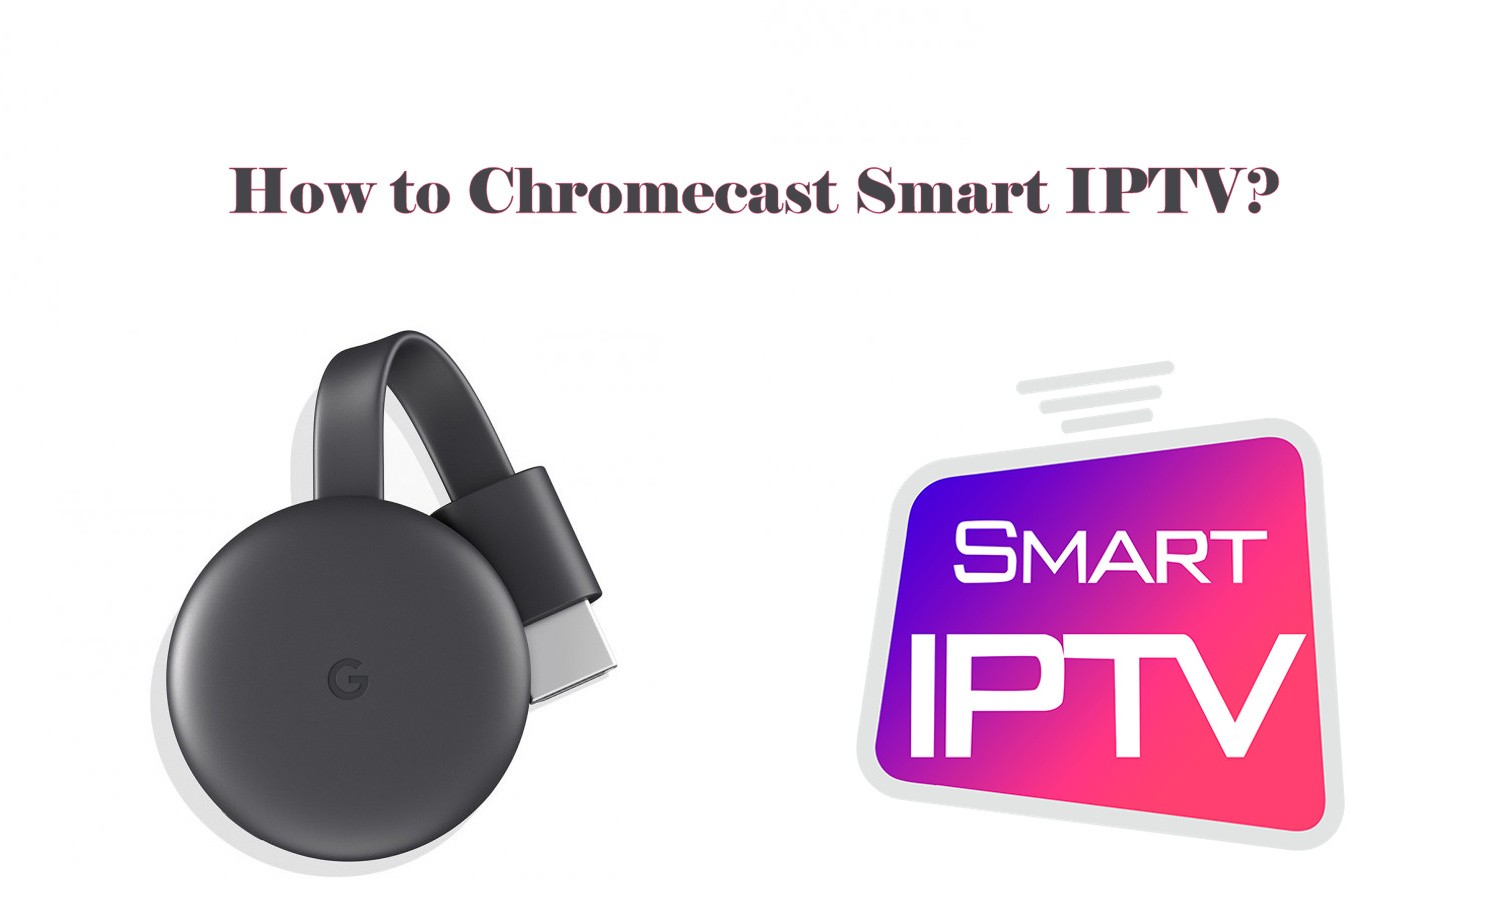 How to Chromecast Smart IPTV to TV [2021]